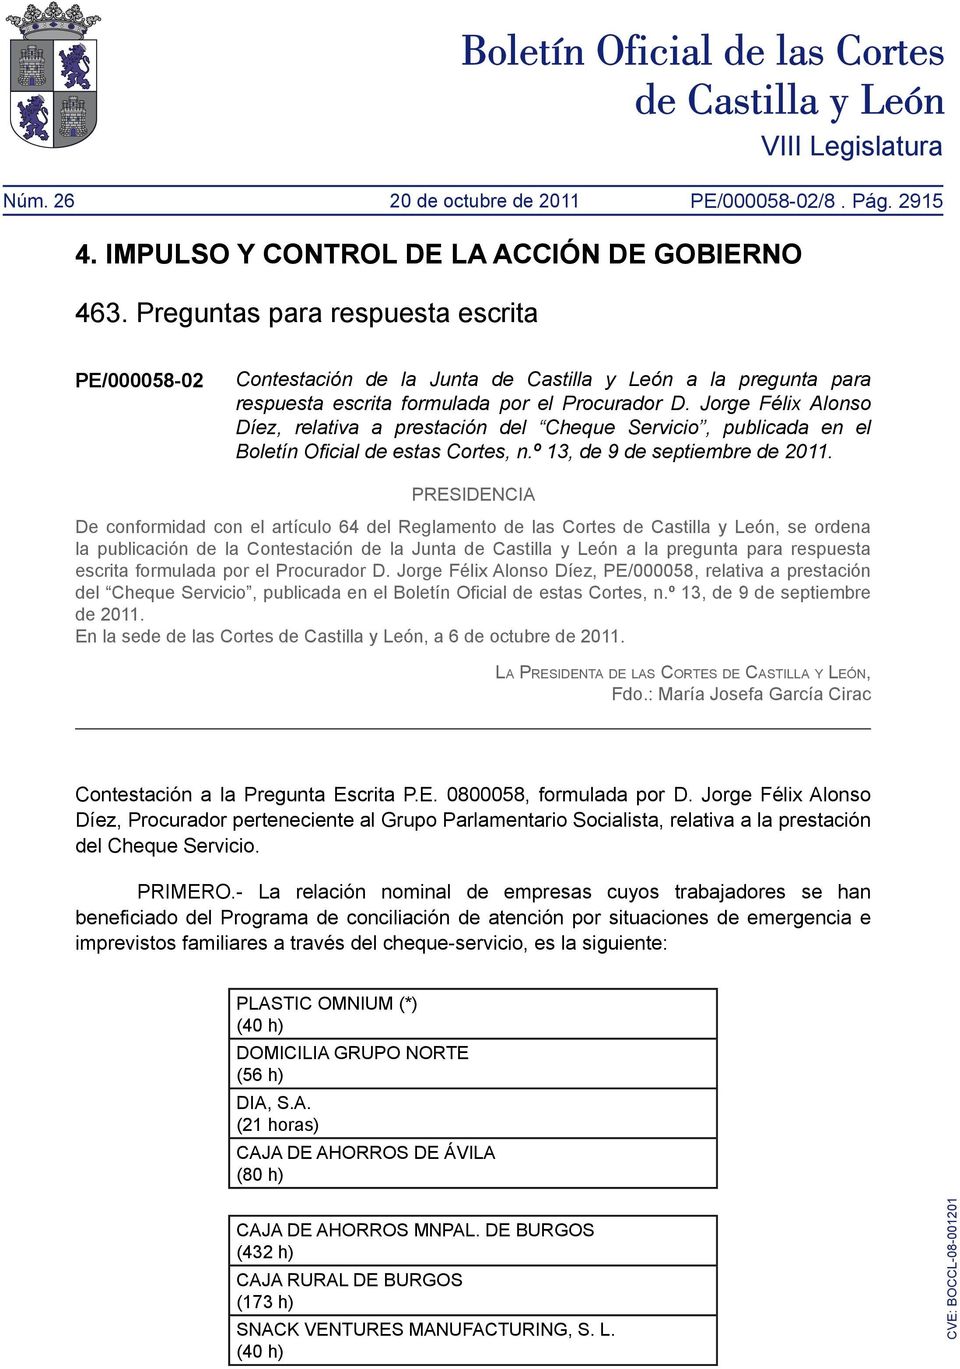 Jorge Félix Alonso Díez, relativa a prestación del Cheque Servicio, publicada en el Boletín Oficial de estas Cortes, n.º 13, de 9 de septiembre de 2011.